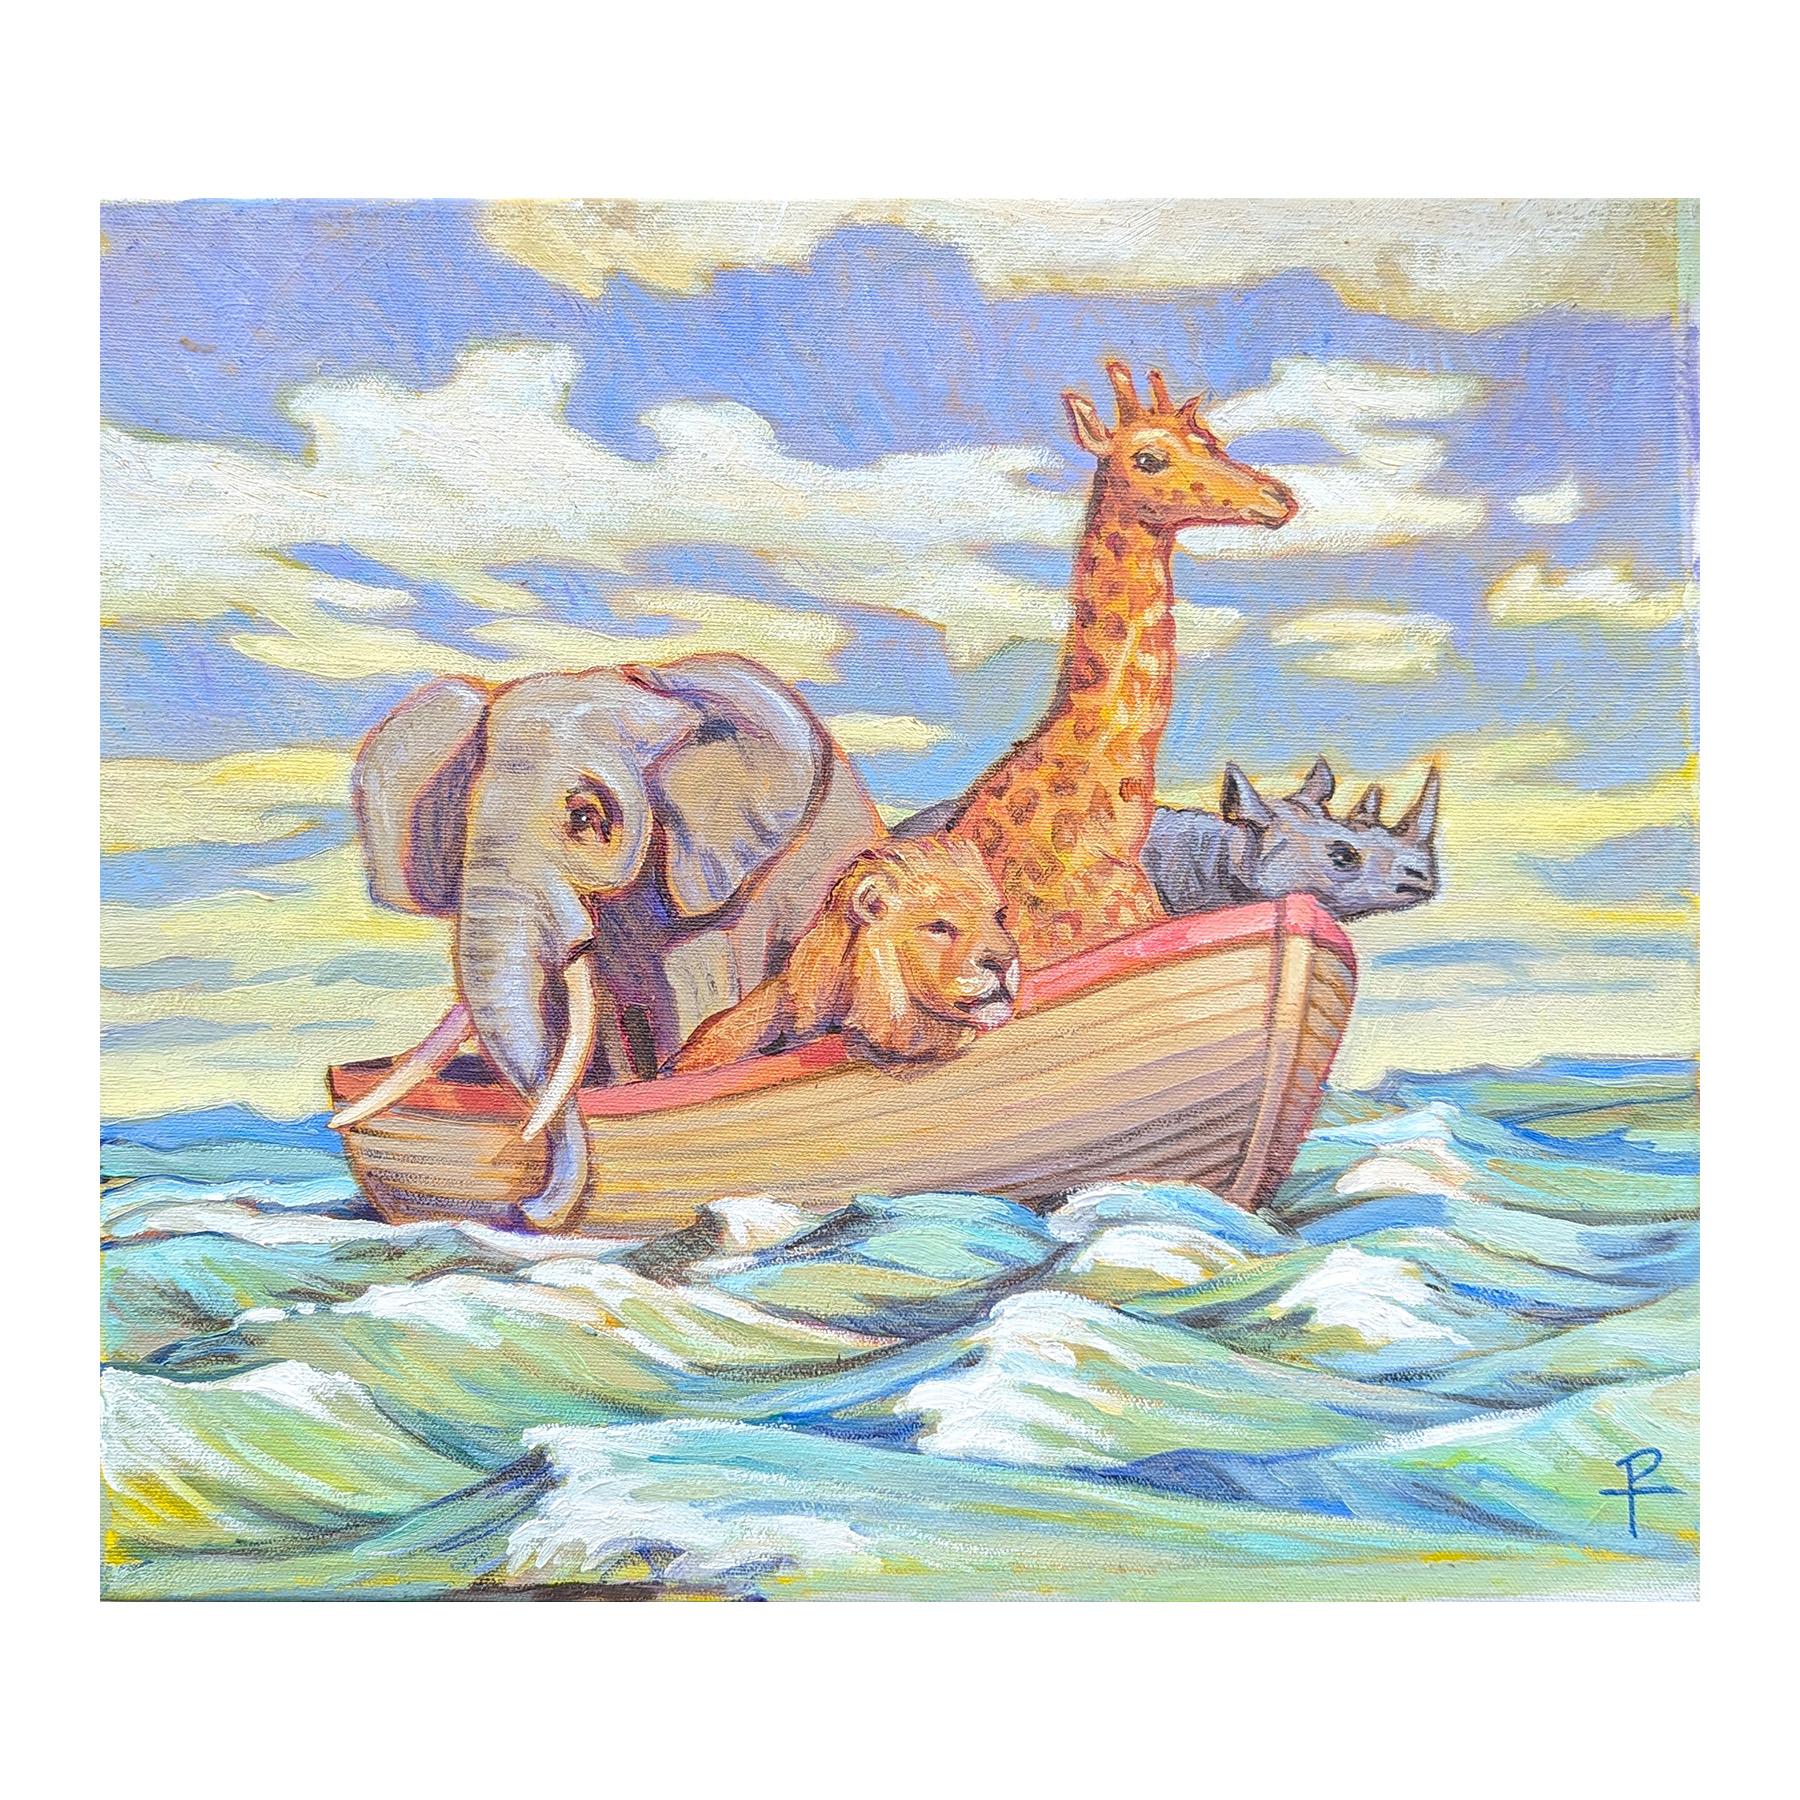 Buntes, pastellfarbenes Gemälde des zeitgenössischen Künstlers Henry David Potwin. Das Werk zeigt einen Elefanten, eine Giraffe, einen Löwen und ein Nashorn auf einem kleinen Boot auf dem Meer, das an die Arche Noah erinnert. Signiert in der rechten